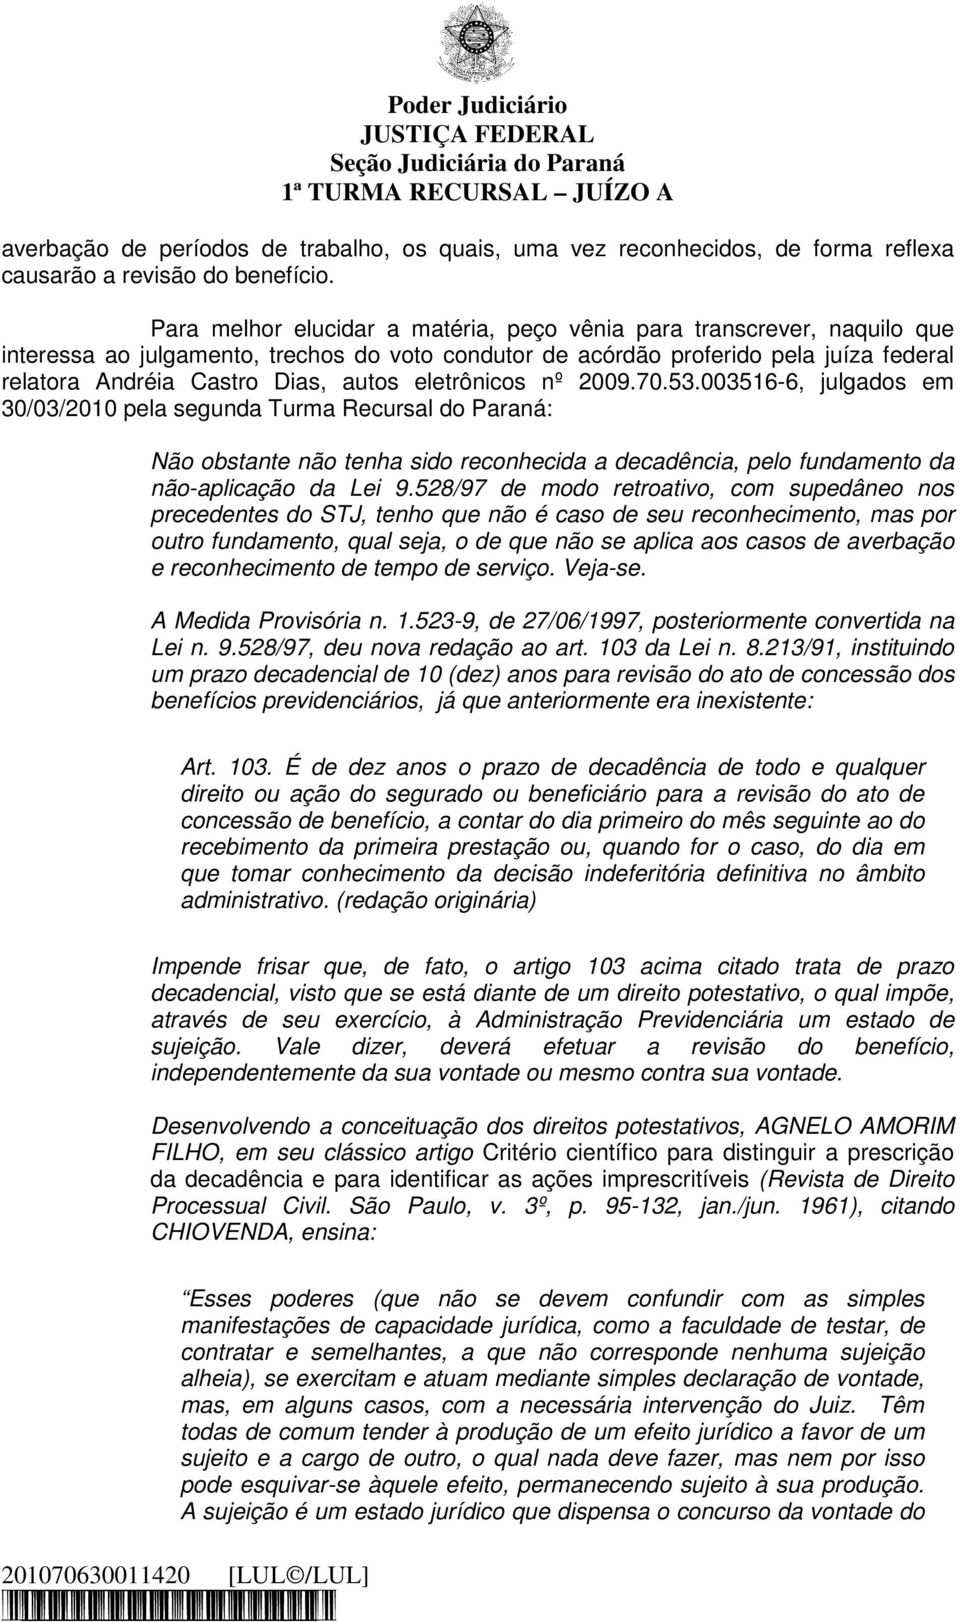 eletrônicos nº 2009.70.53.003516-6, julgados em 30/03/2010 pela segunda Turma Recursal do Paraná: Não obstante não tenha sido reconhecida a decadência, pelo fundamento da não-aplicação da Lei 9.